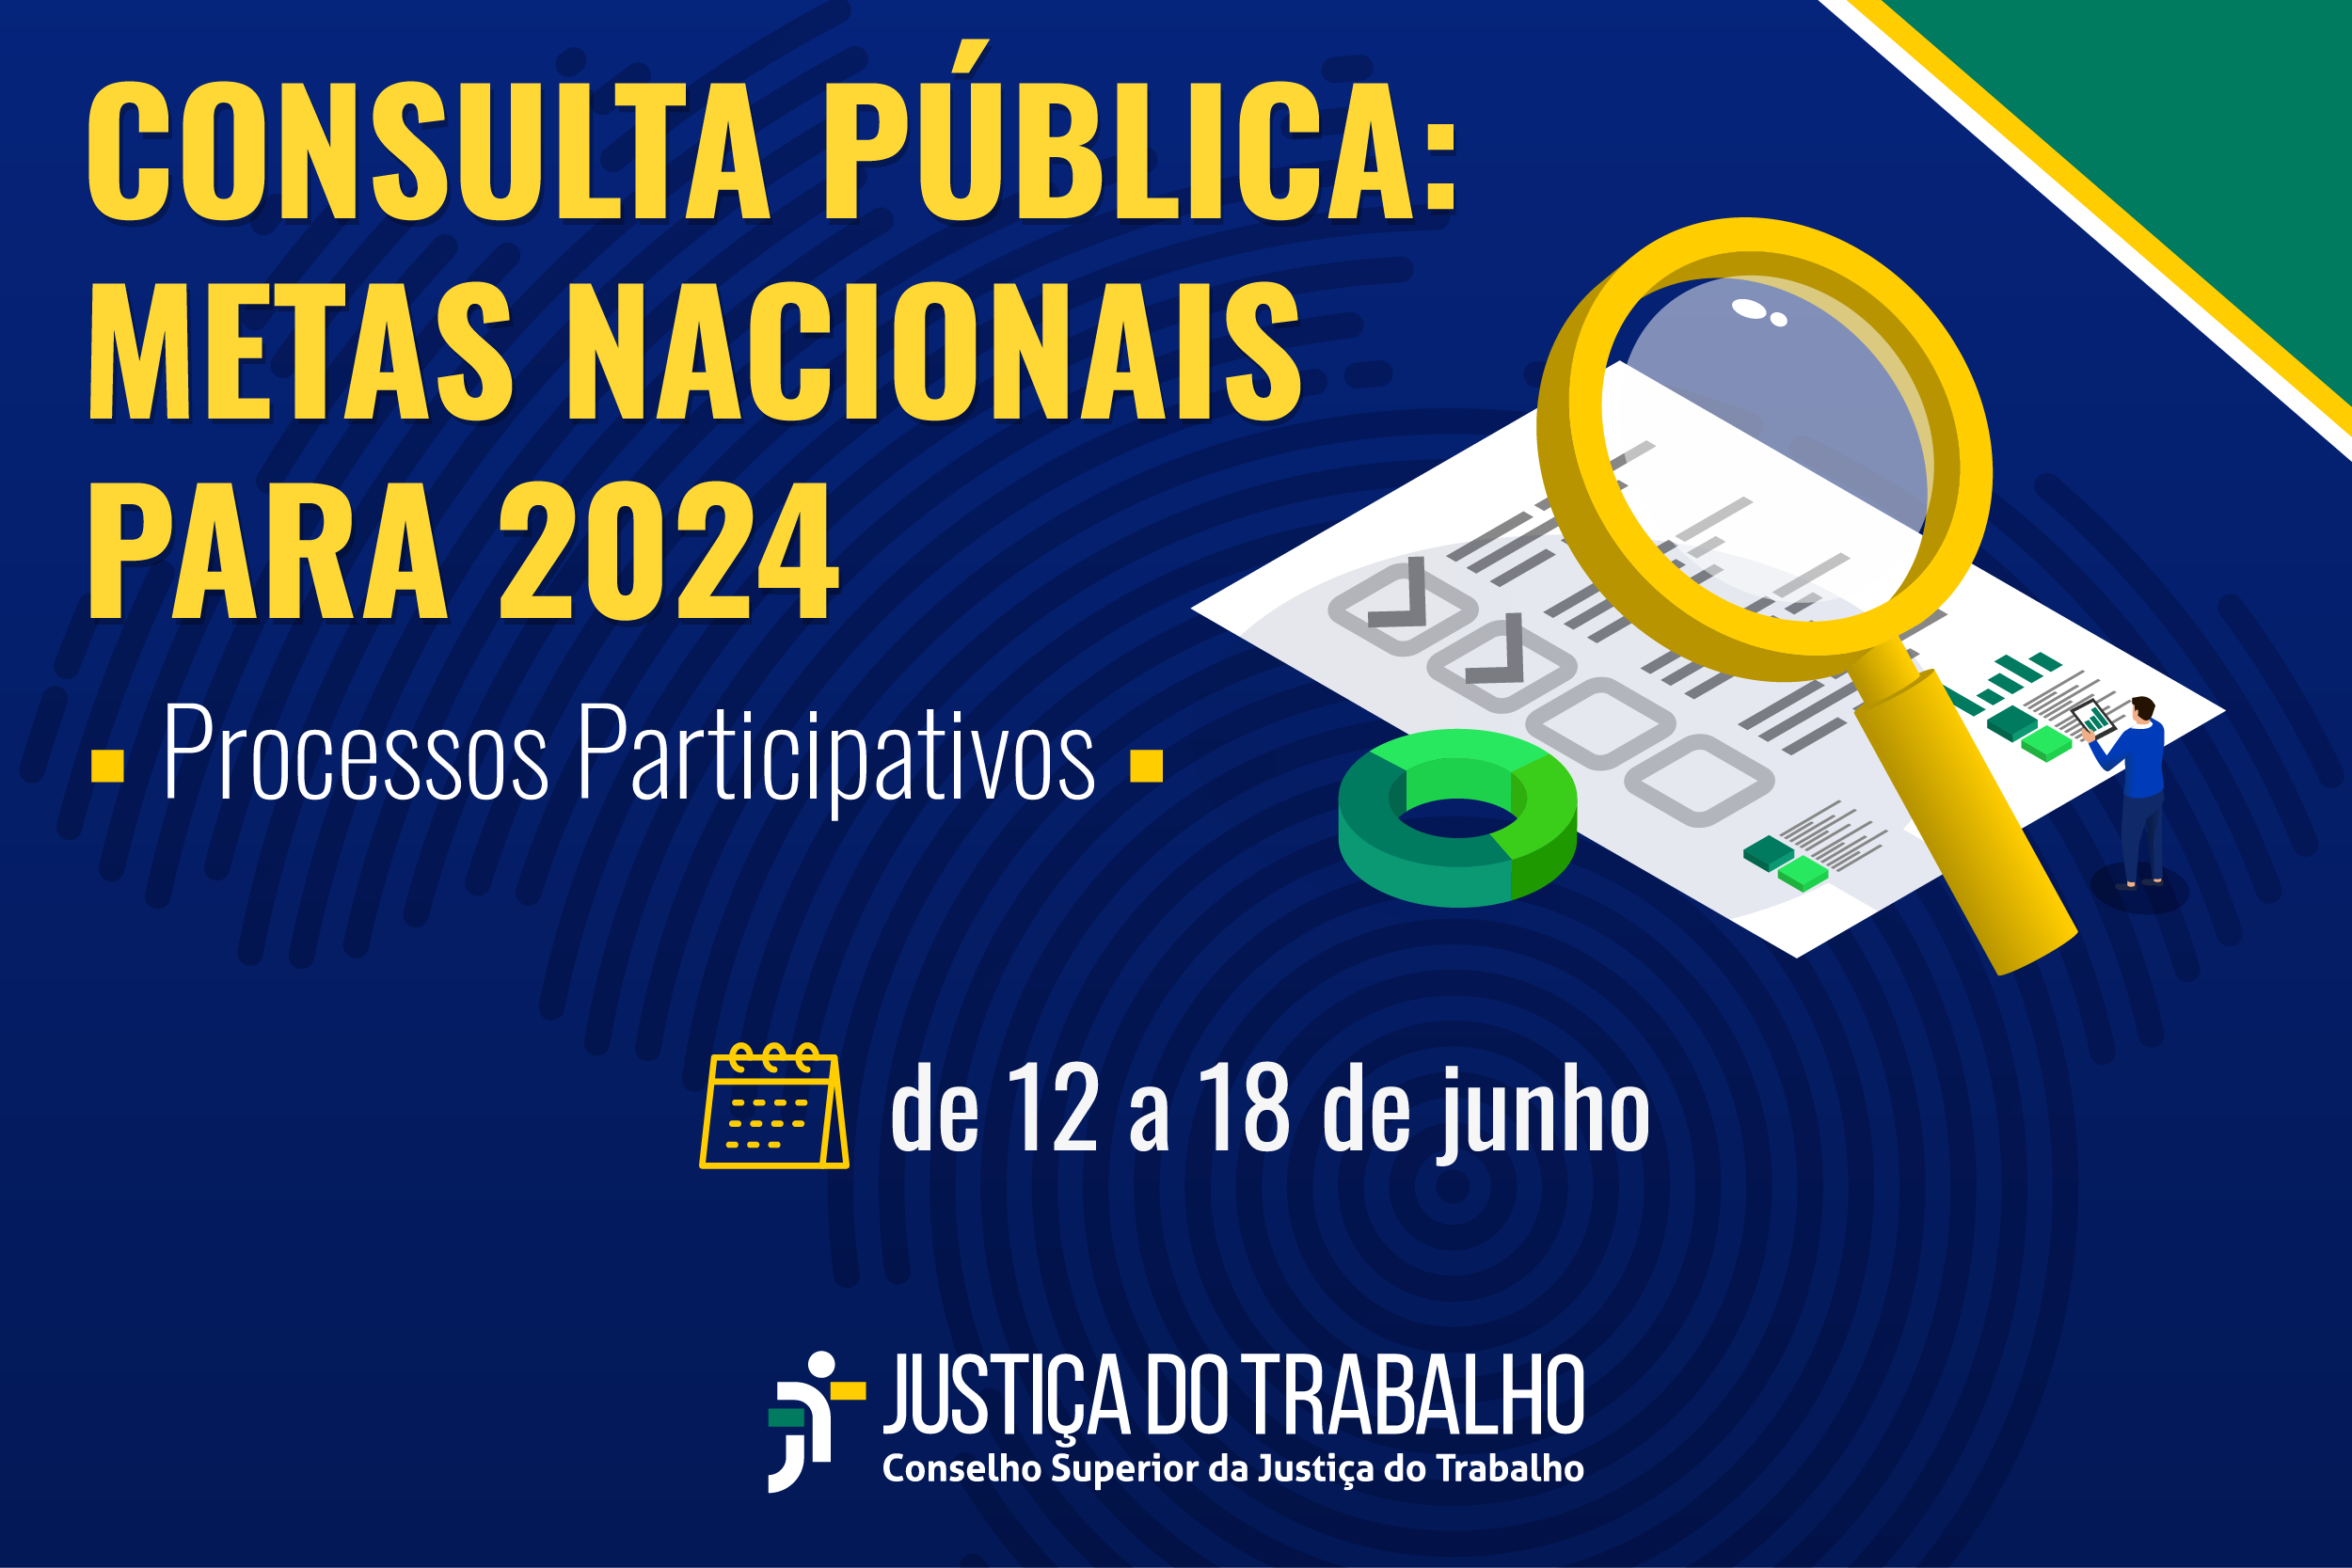 Participe da consulta pública para as metas nacionais 2024 da Justiça do Trabalho